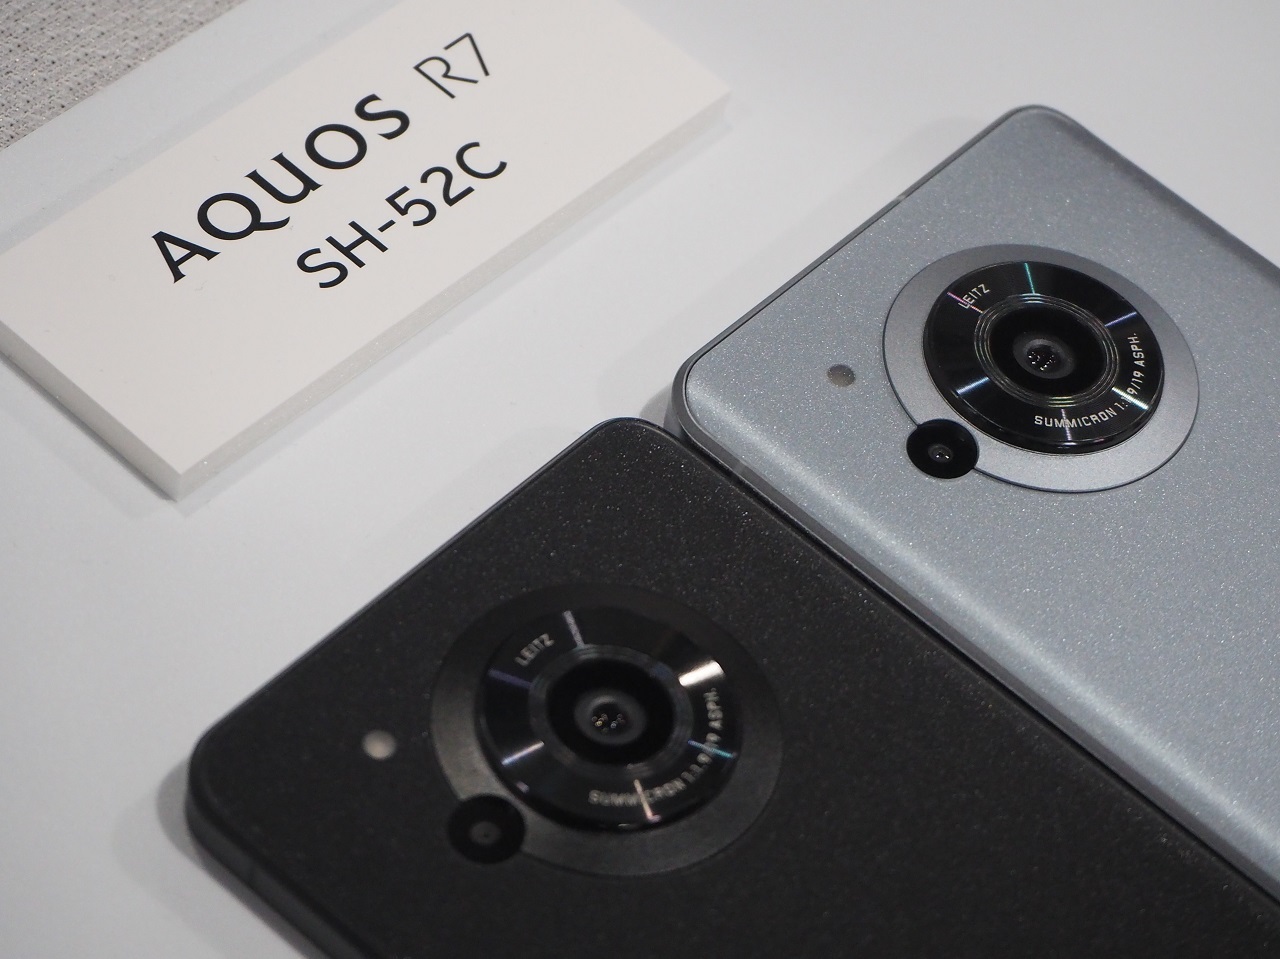 新機種の1つ「AQUOS R7」は、前機種同様1インチの大型イメージセンサーを搭載しながらも、フォーカス性能が大幅に向上している